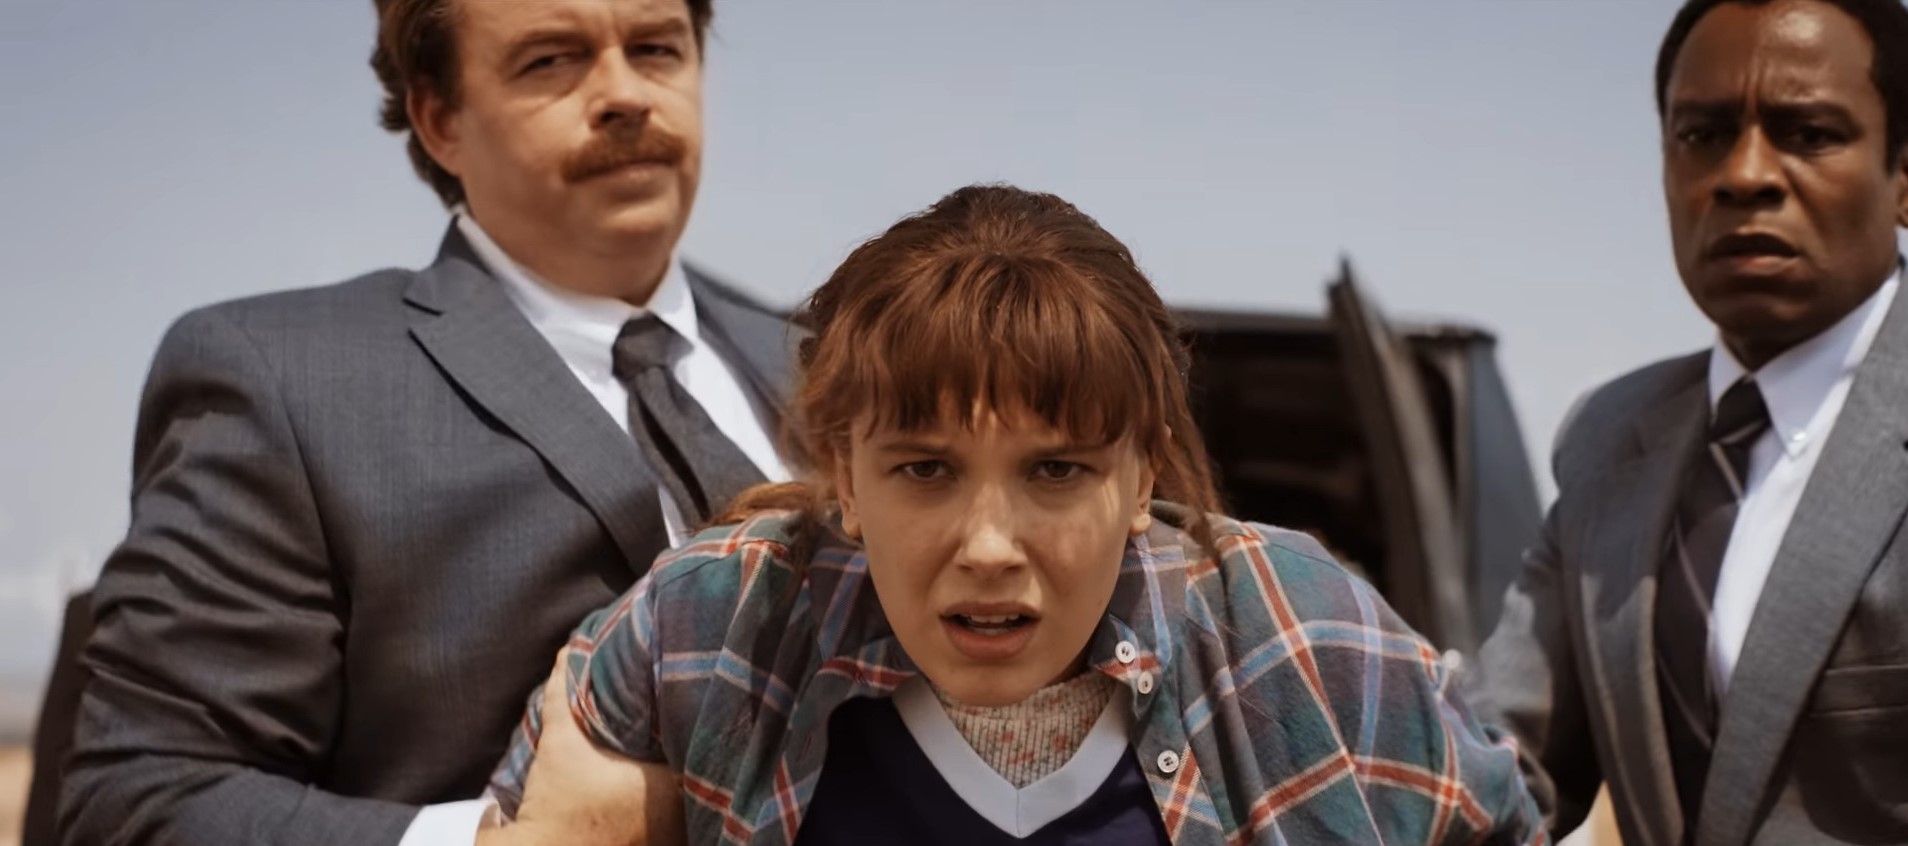 Милли Бобби Браун в роли Одиннадцатой в сериале "Очень странные дела"